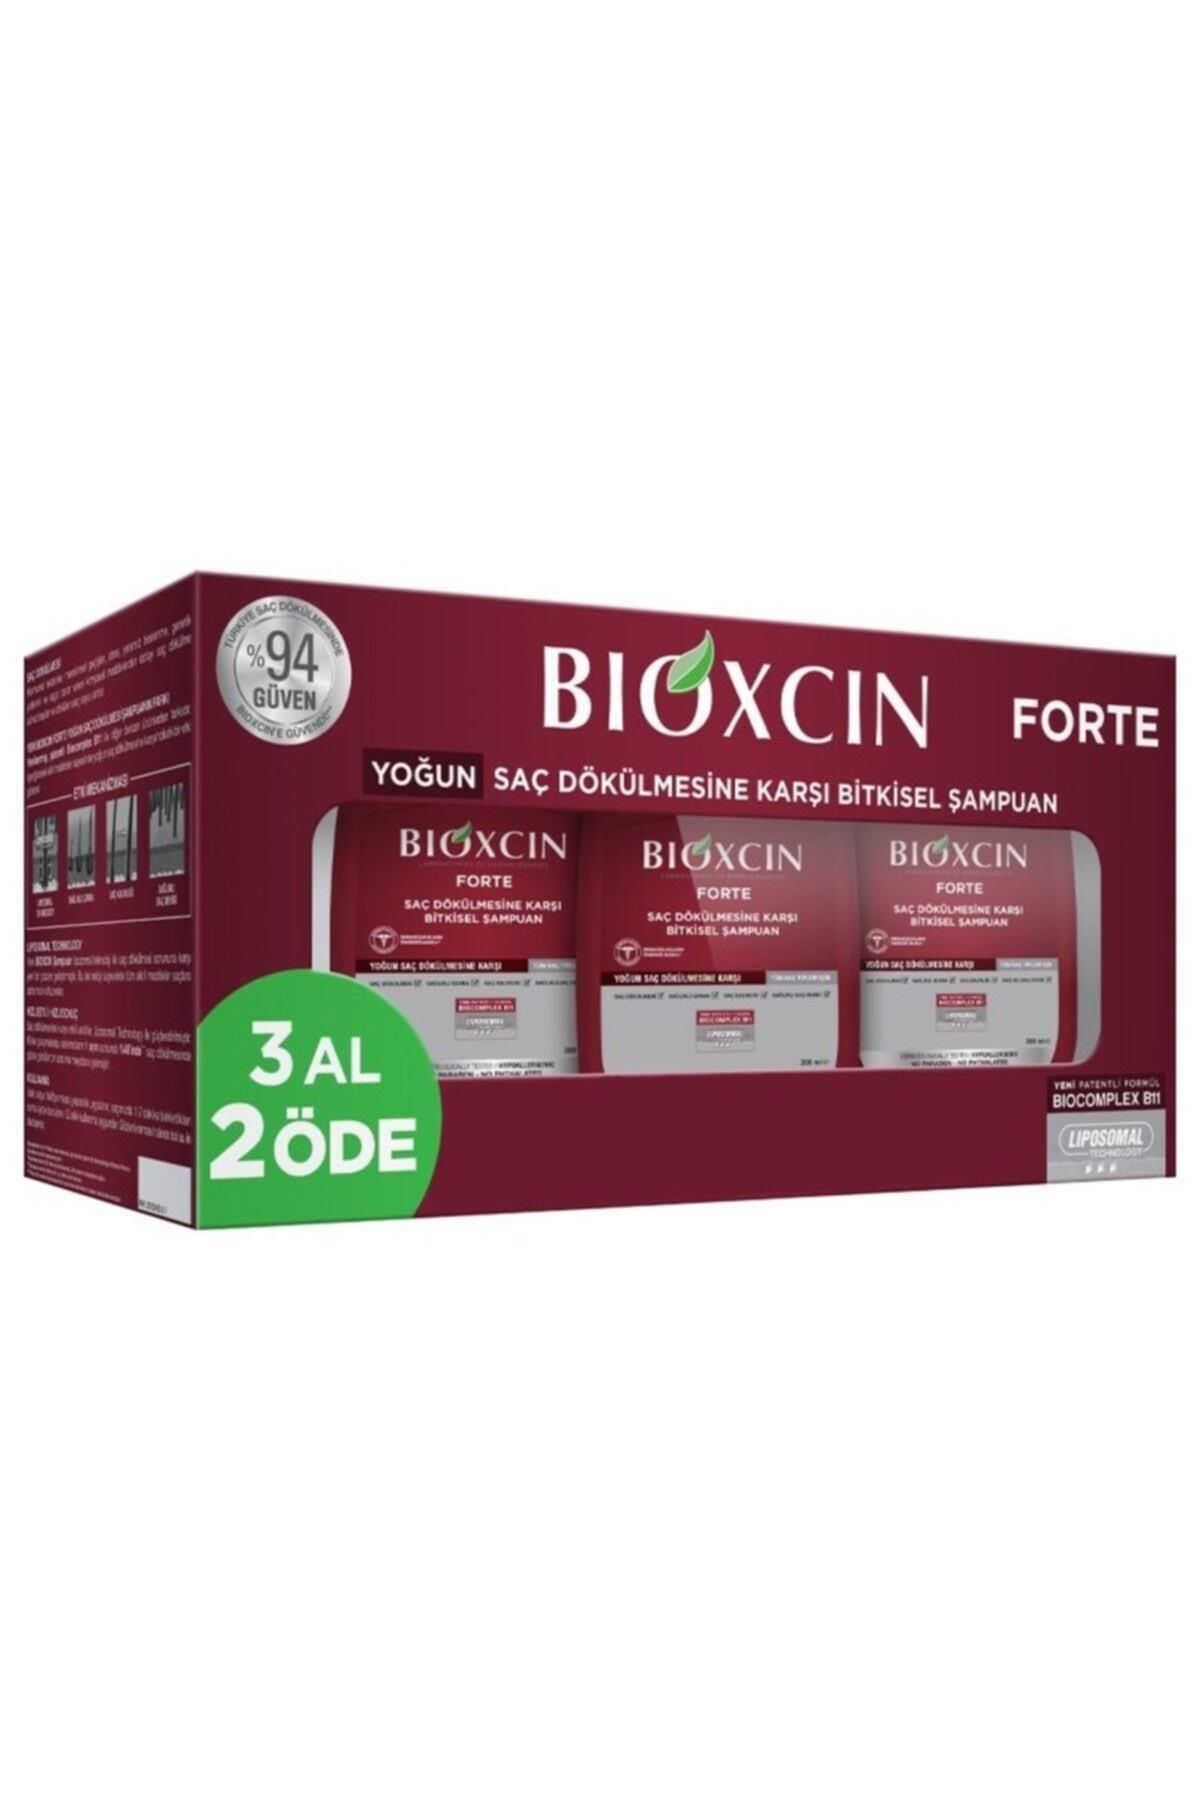 Bioxcin Forte Saç Dökülmesine Karşı Bakım Şampuanı 300 ml - 3 Al 2 Öde